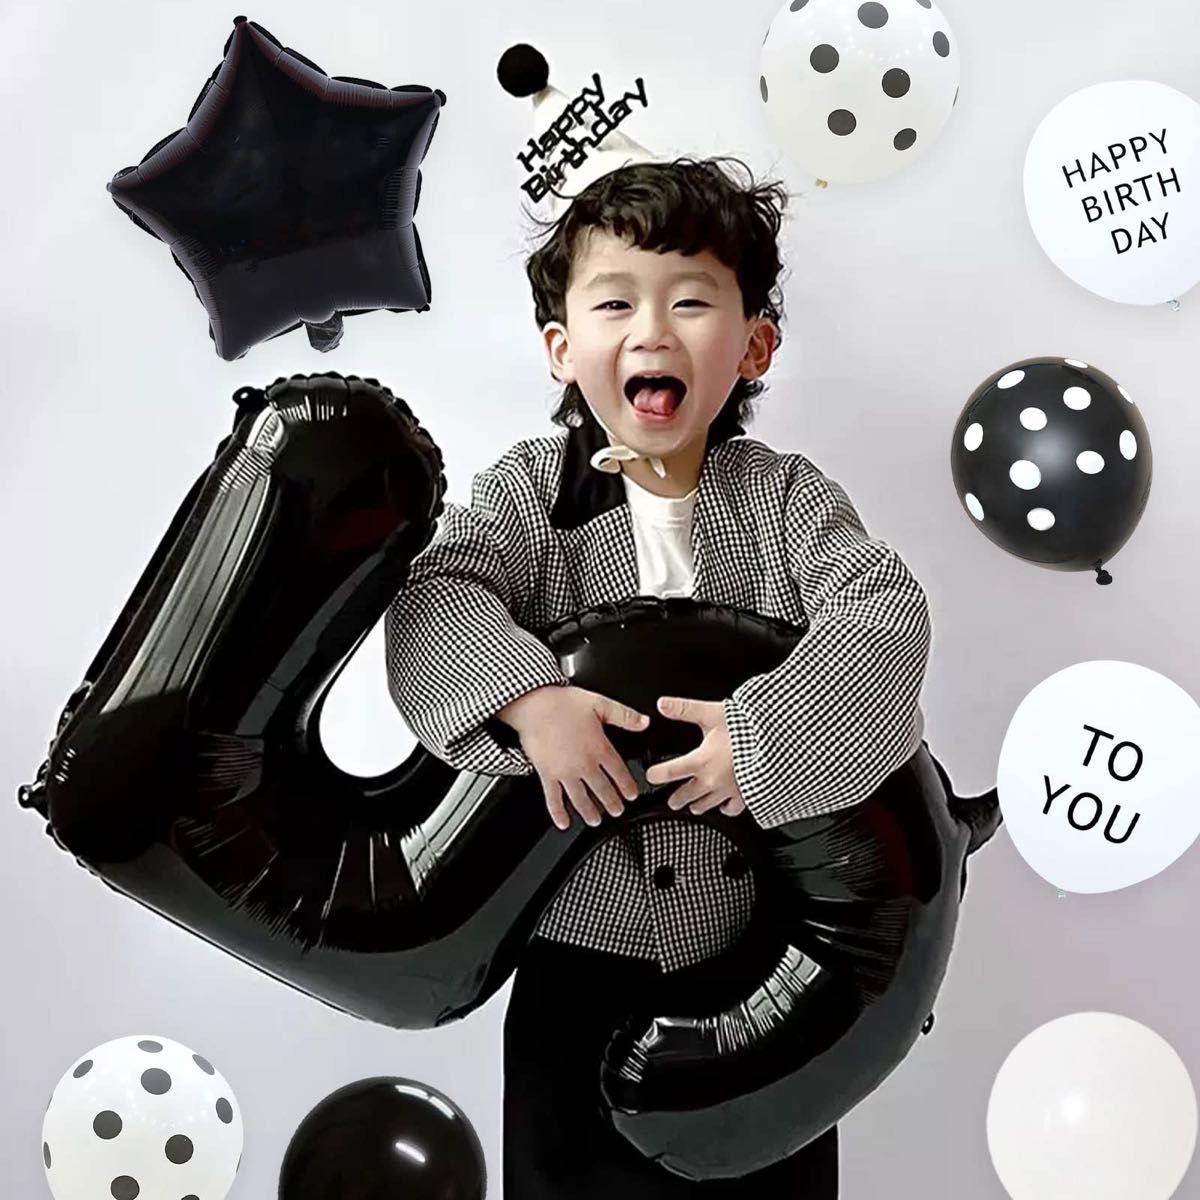 数字5 黒色 誕生日 バルーン パーティー 飾り風船 デコレーション装飾 大きい バルーン 記念日 子供 大人兼用 バースデー